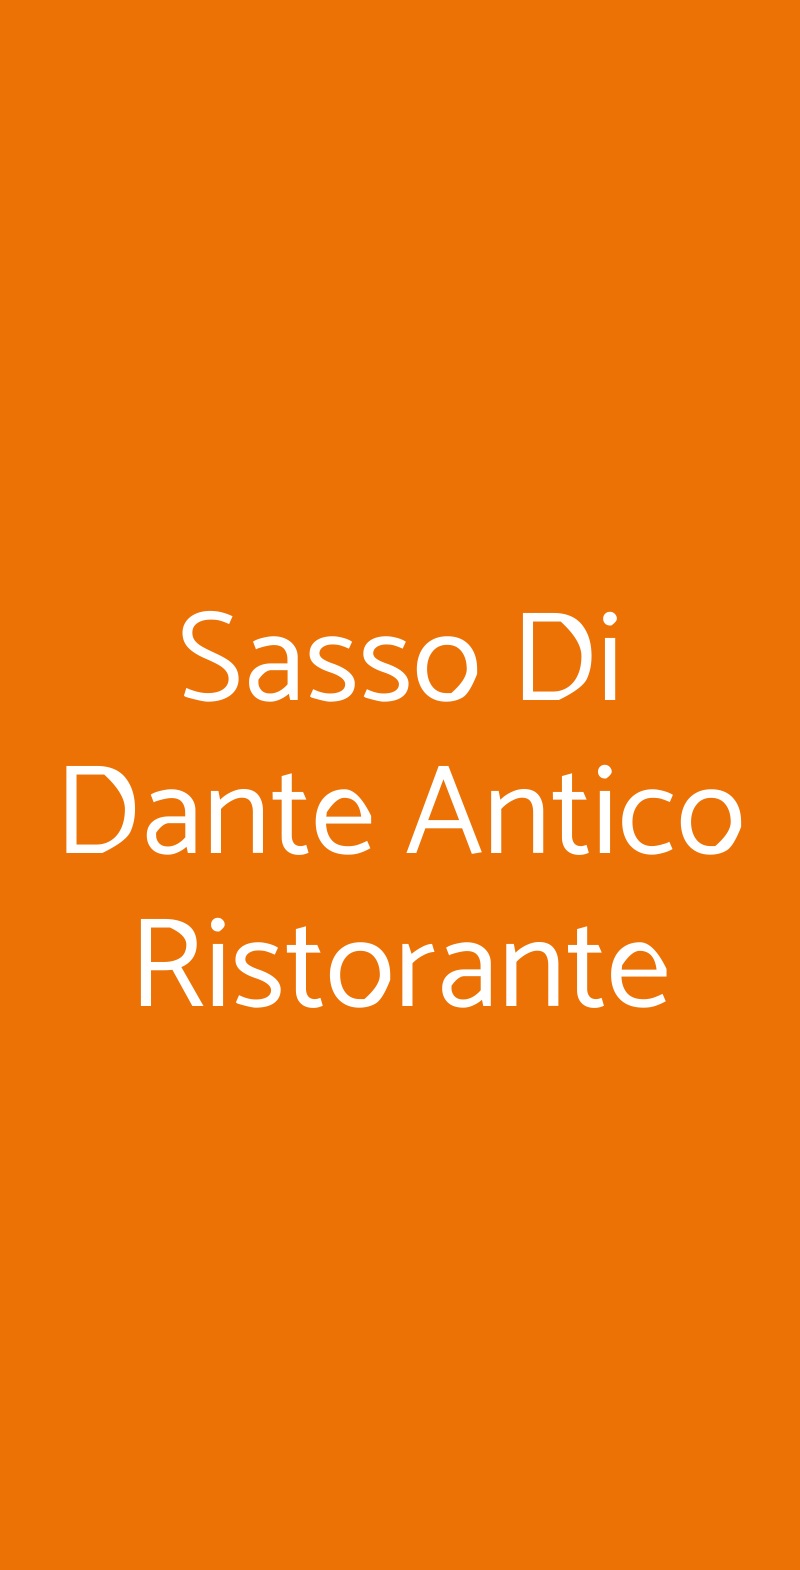 Sasso Di Dante Antico Ristorante Firenze menù 1 pagina